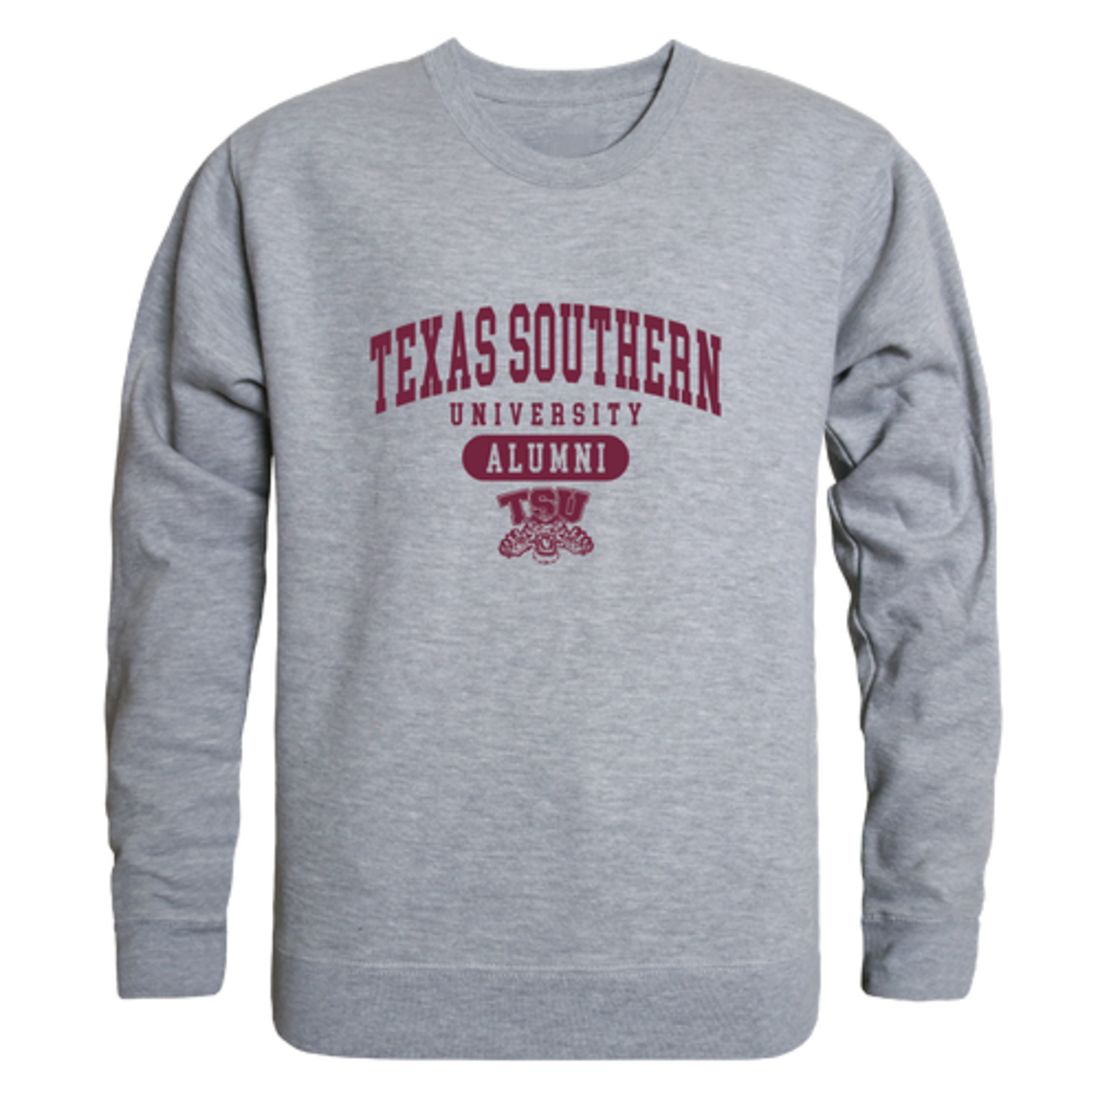 TSU Texas Southern University Tigers Alumni Fleece Crewneck Pullover Sweatshirt Heather Gray-Campus-Wardrobe